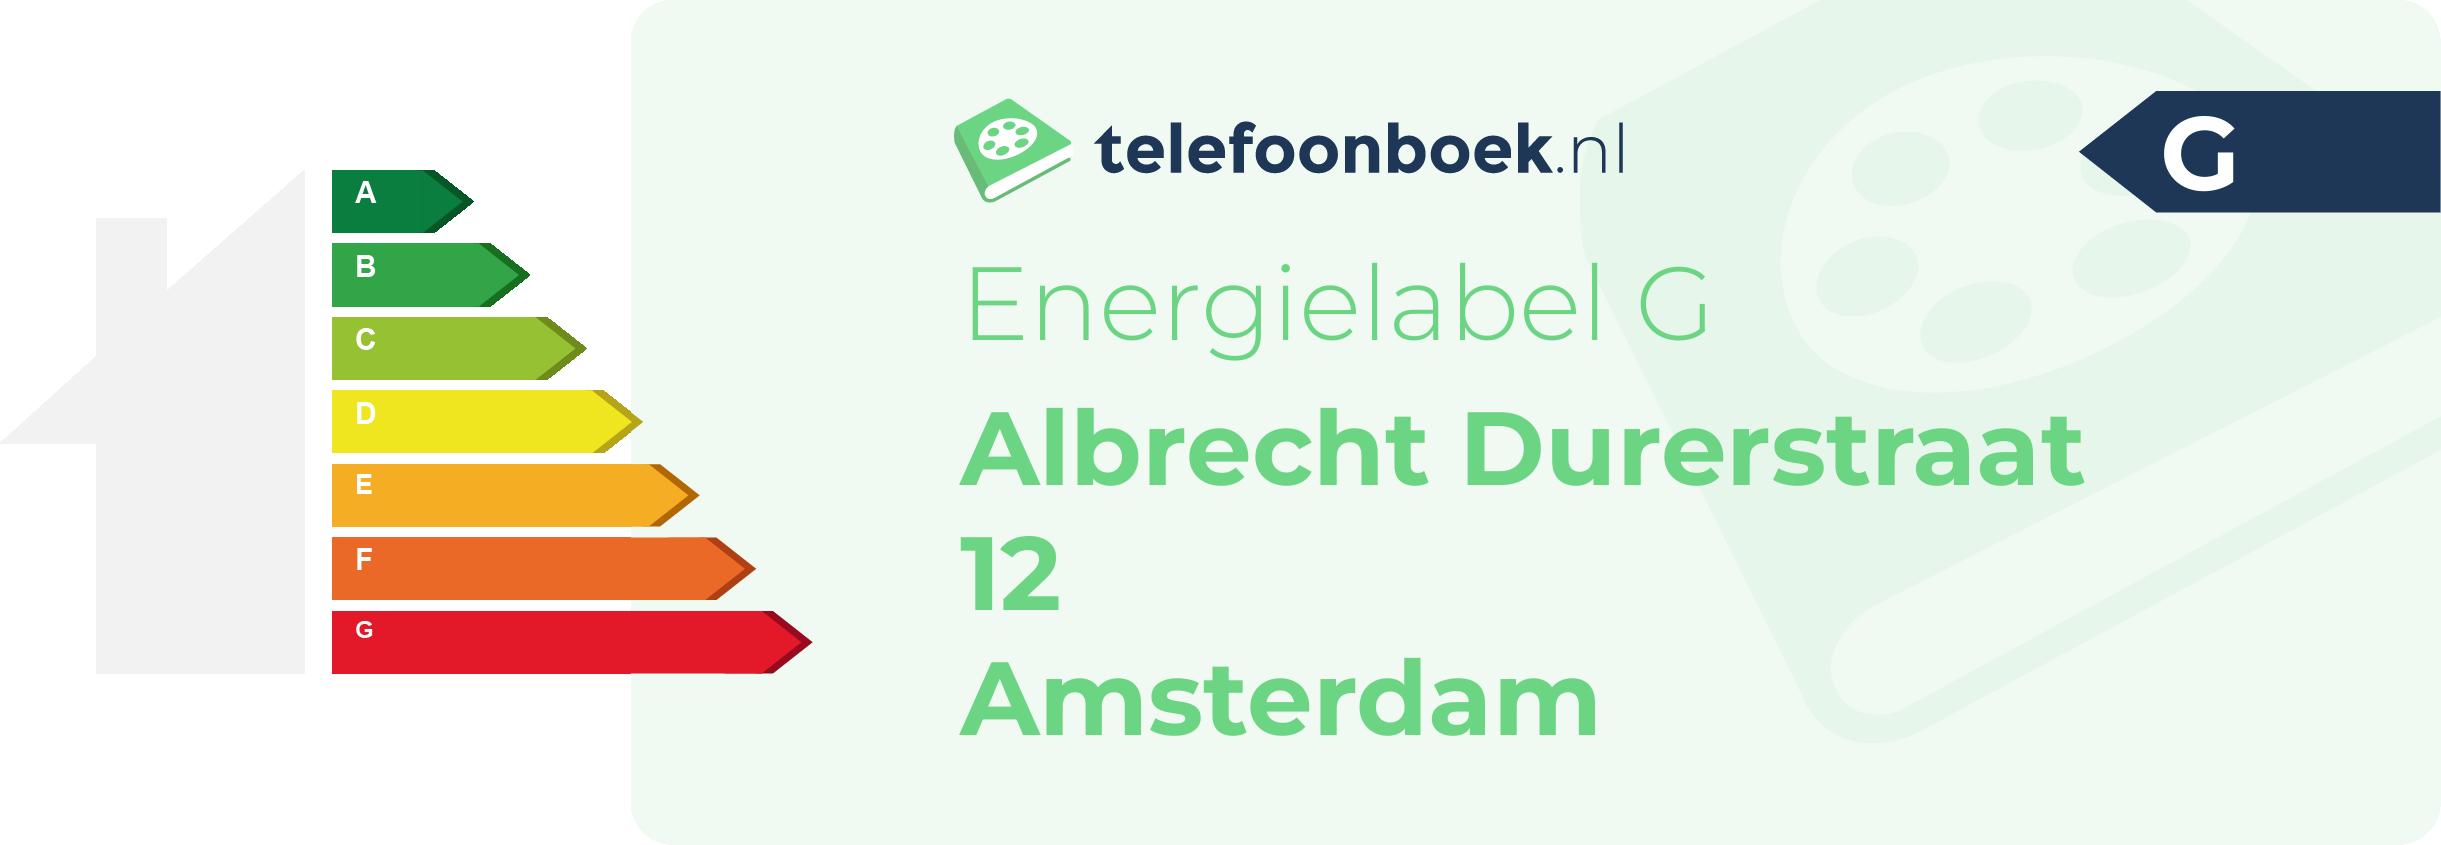 Energielabel Albrecht Durerstraat 12 Amsterdam